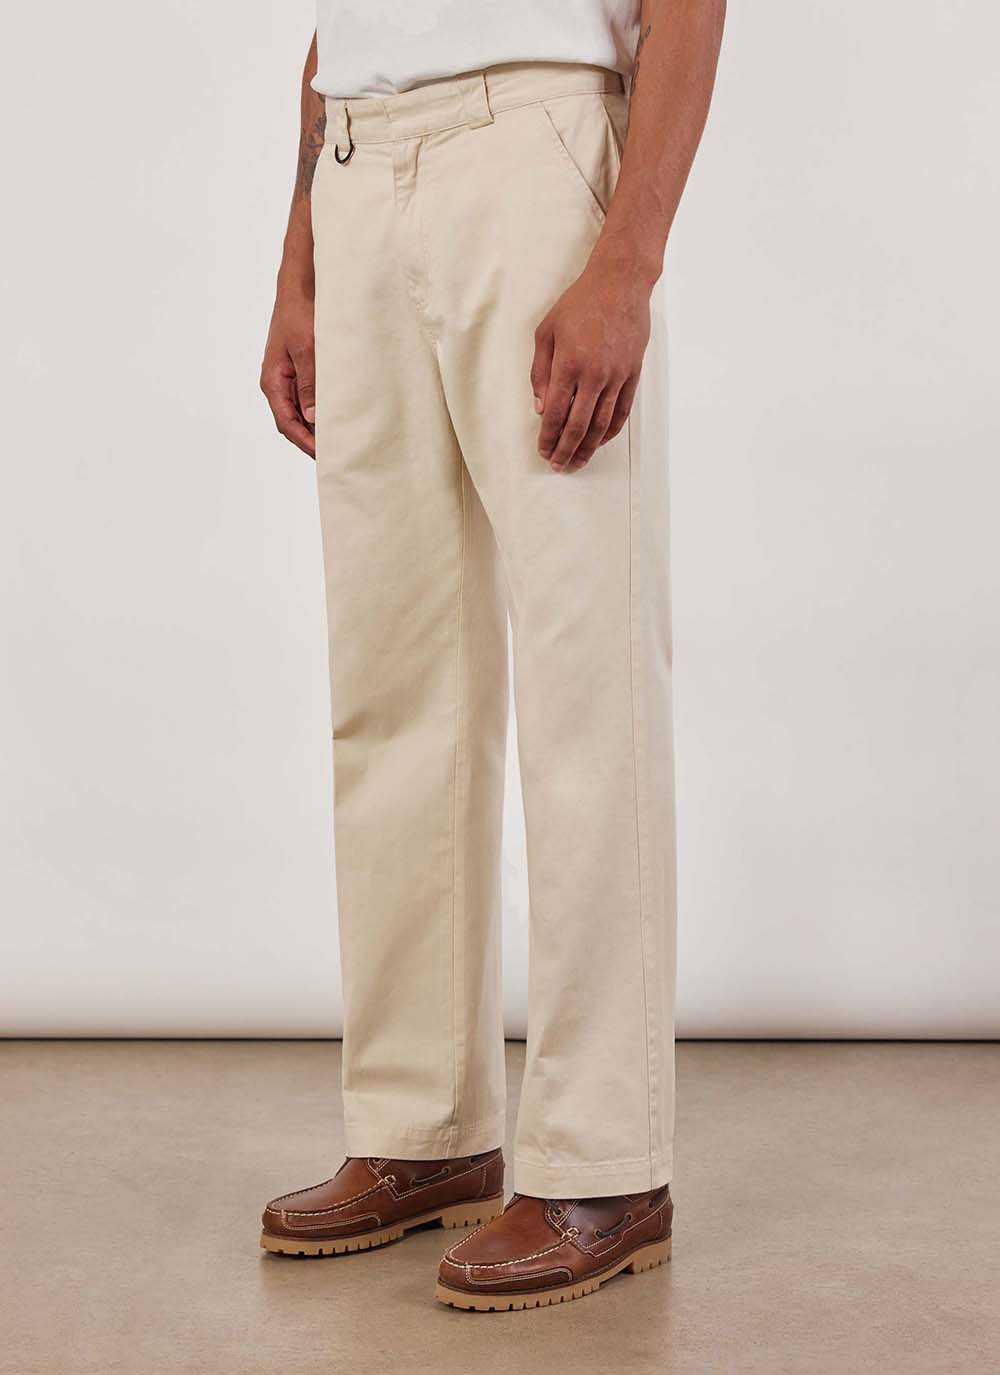 Percival x Pikol: The Lookbook | Linen shirt men, Linen shirt, Embroidered  shirt